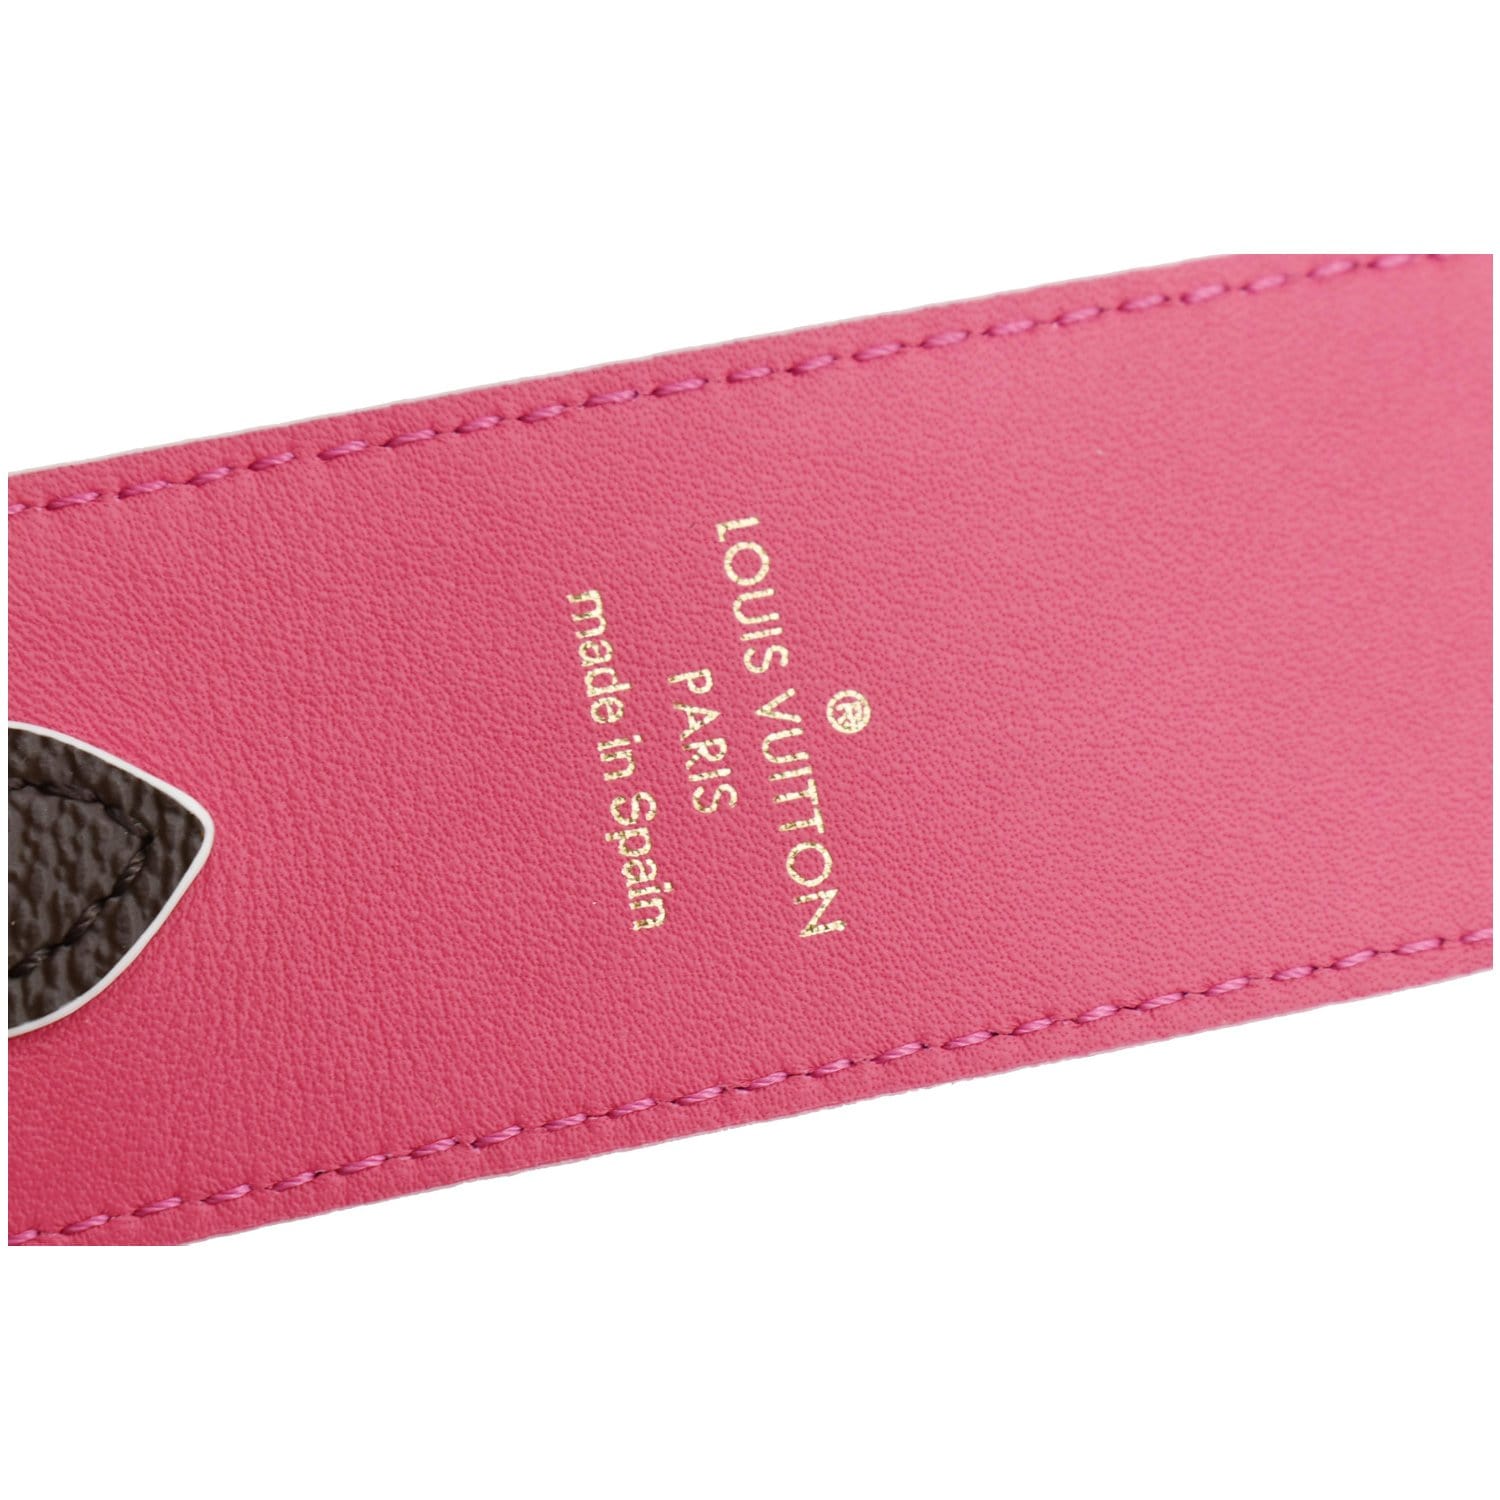 LOUIS VUITTON Strap Epi Bandouliere Shoulder Strap Black Pink Replacement  A807